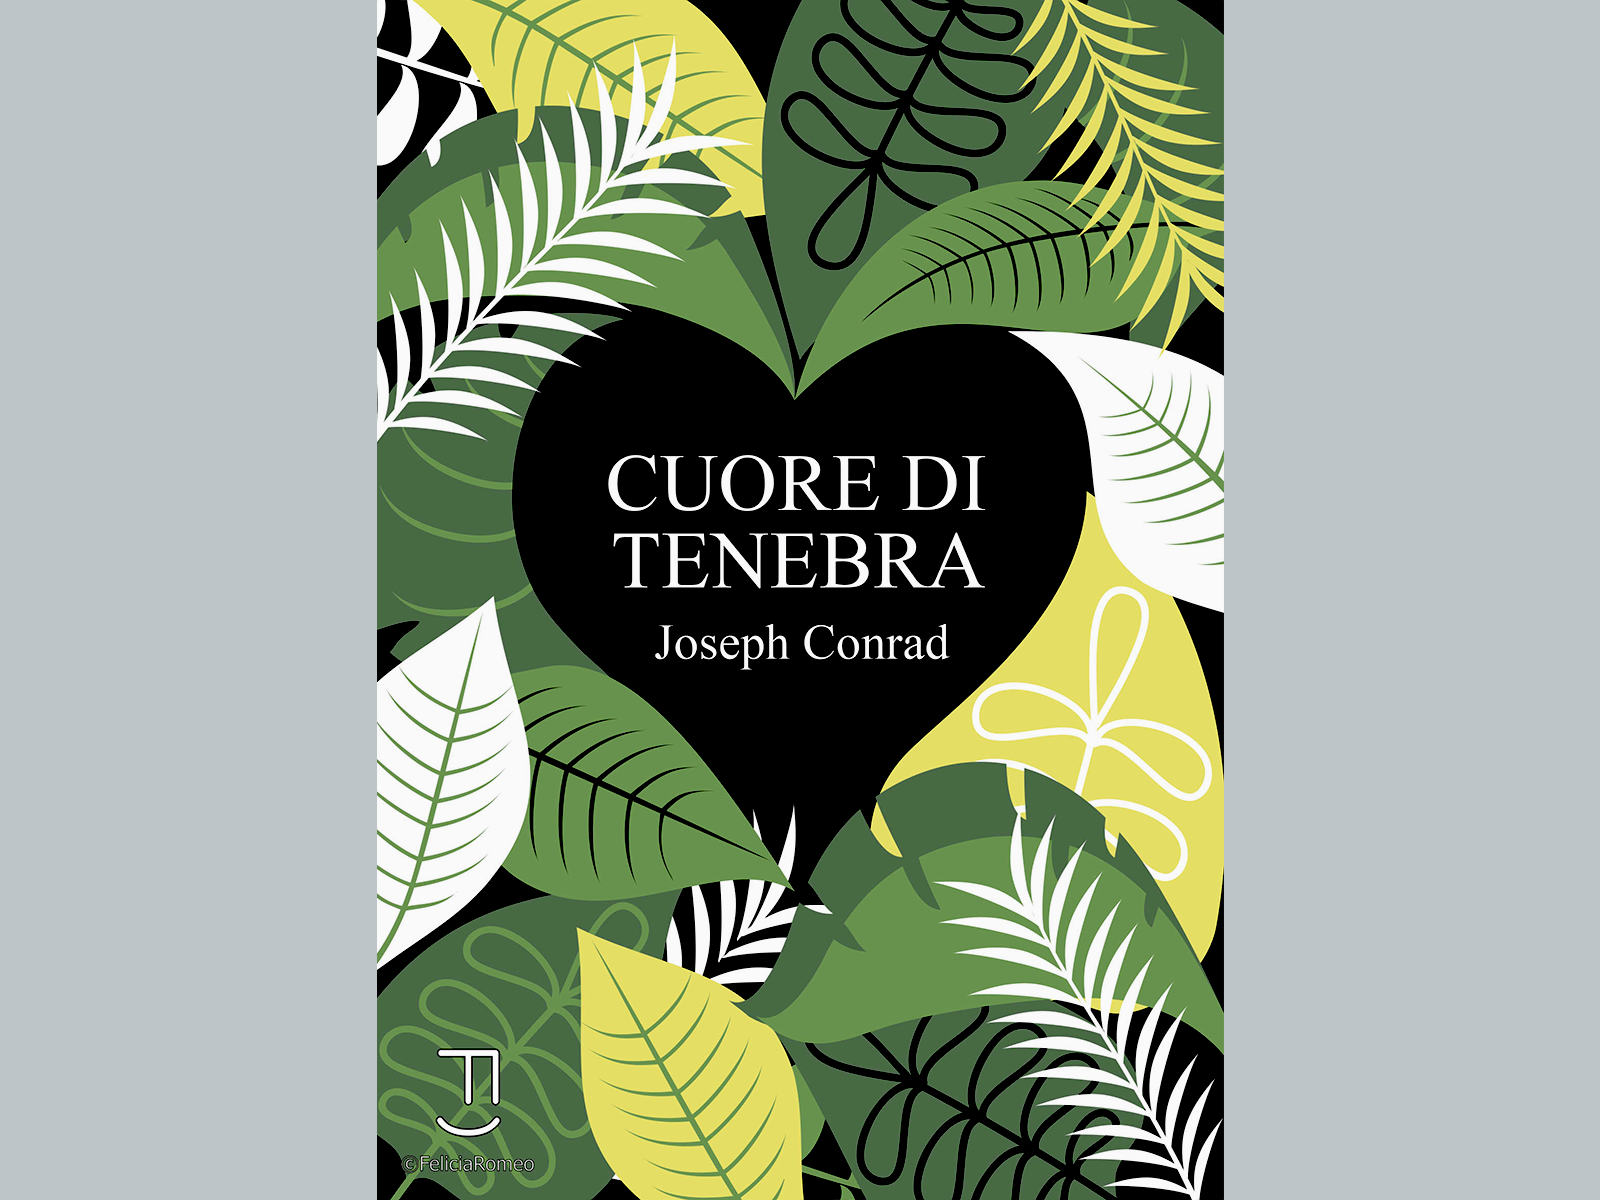 Cover art_ Cuore di Tenebra by Felicia Romeo on Dribbble